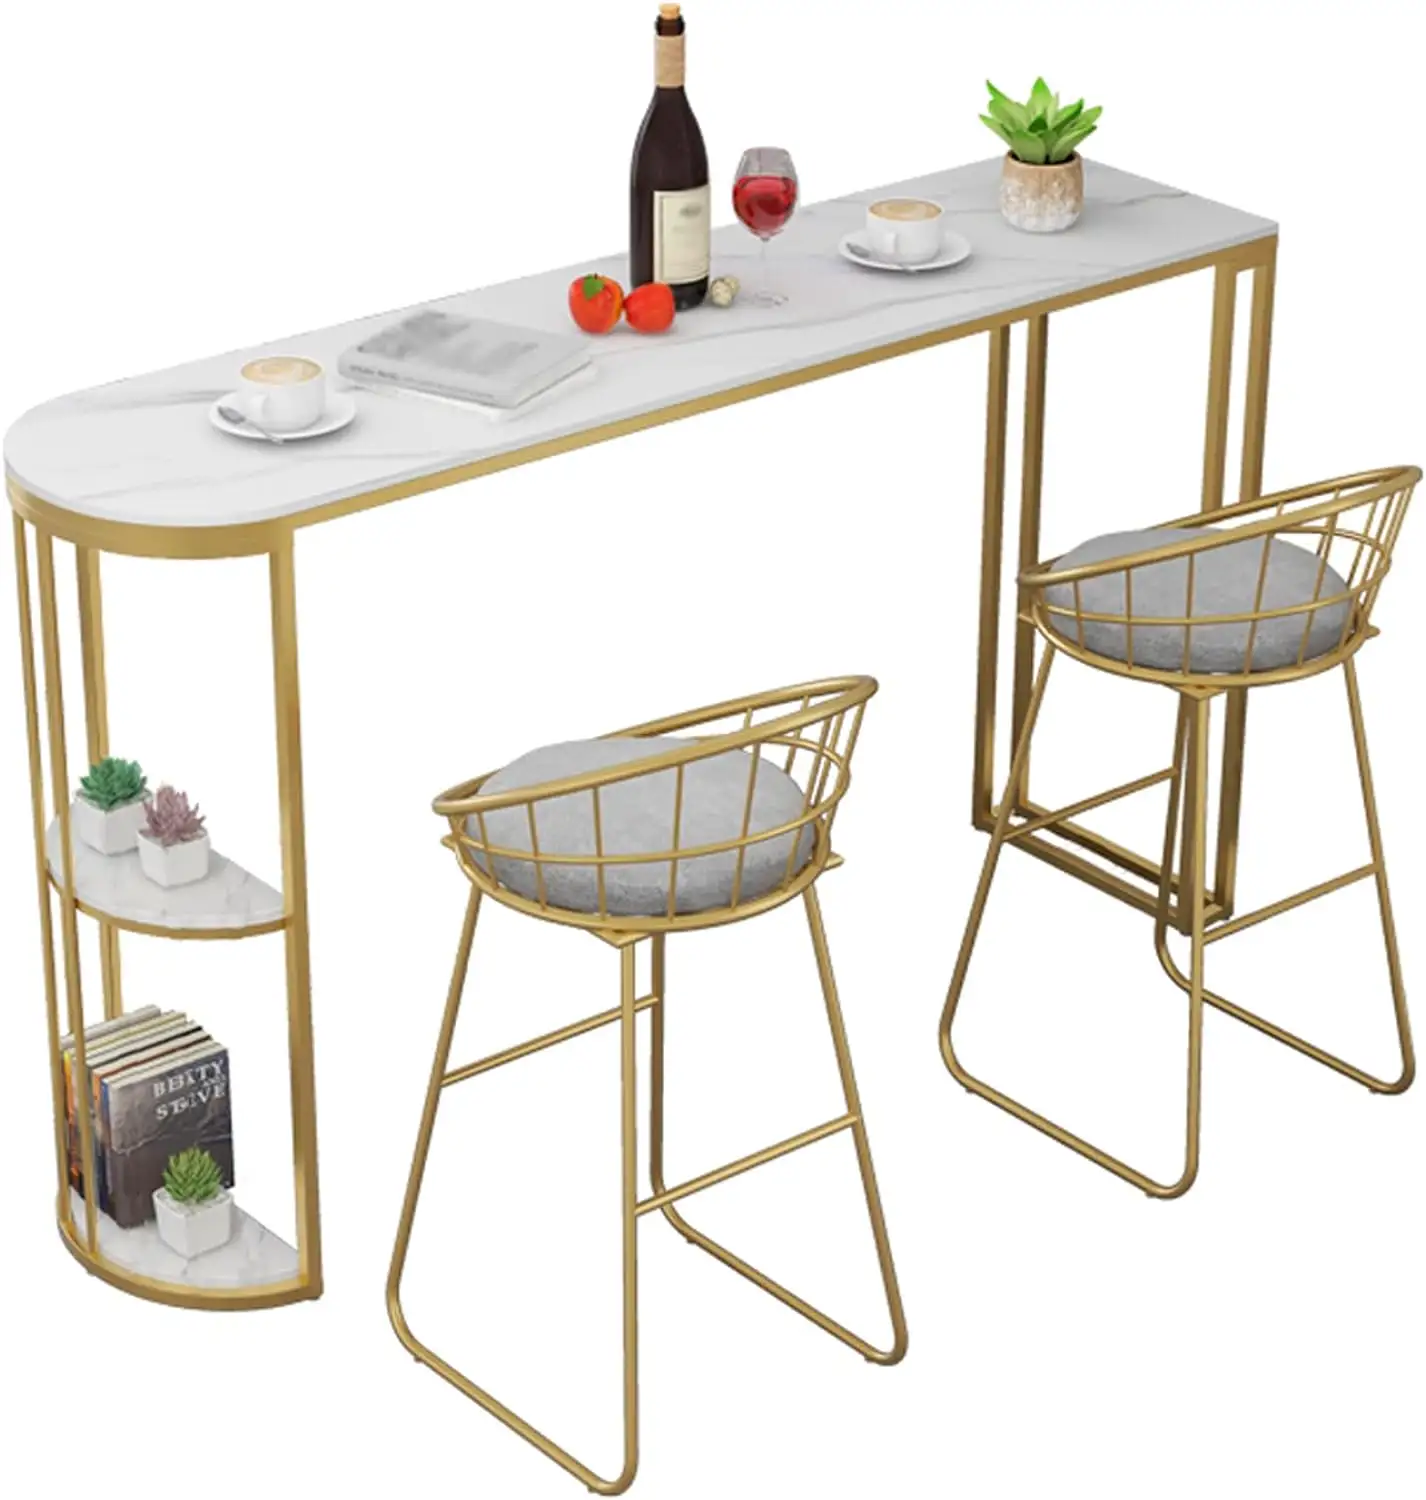 Di alta qualità in metallo oro e marmo bianco fatto a mano Console Bar tavolo completo mobili Bar personalizzato tavolo del vino con sedia da Bar